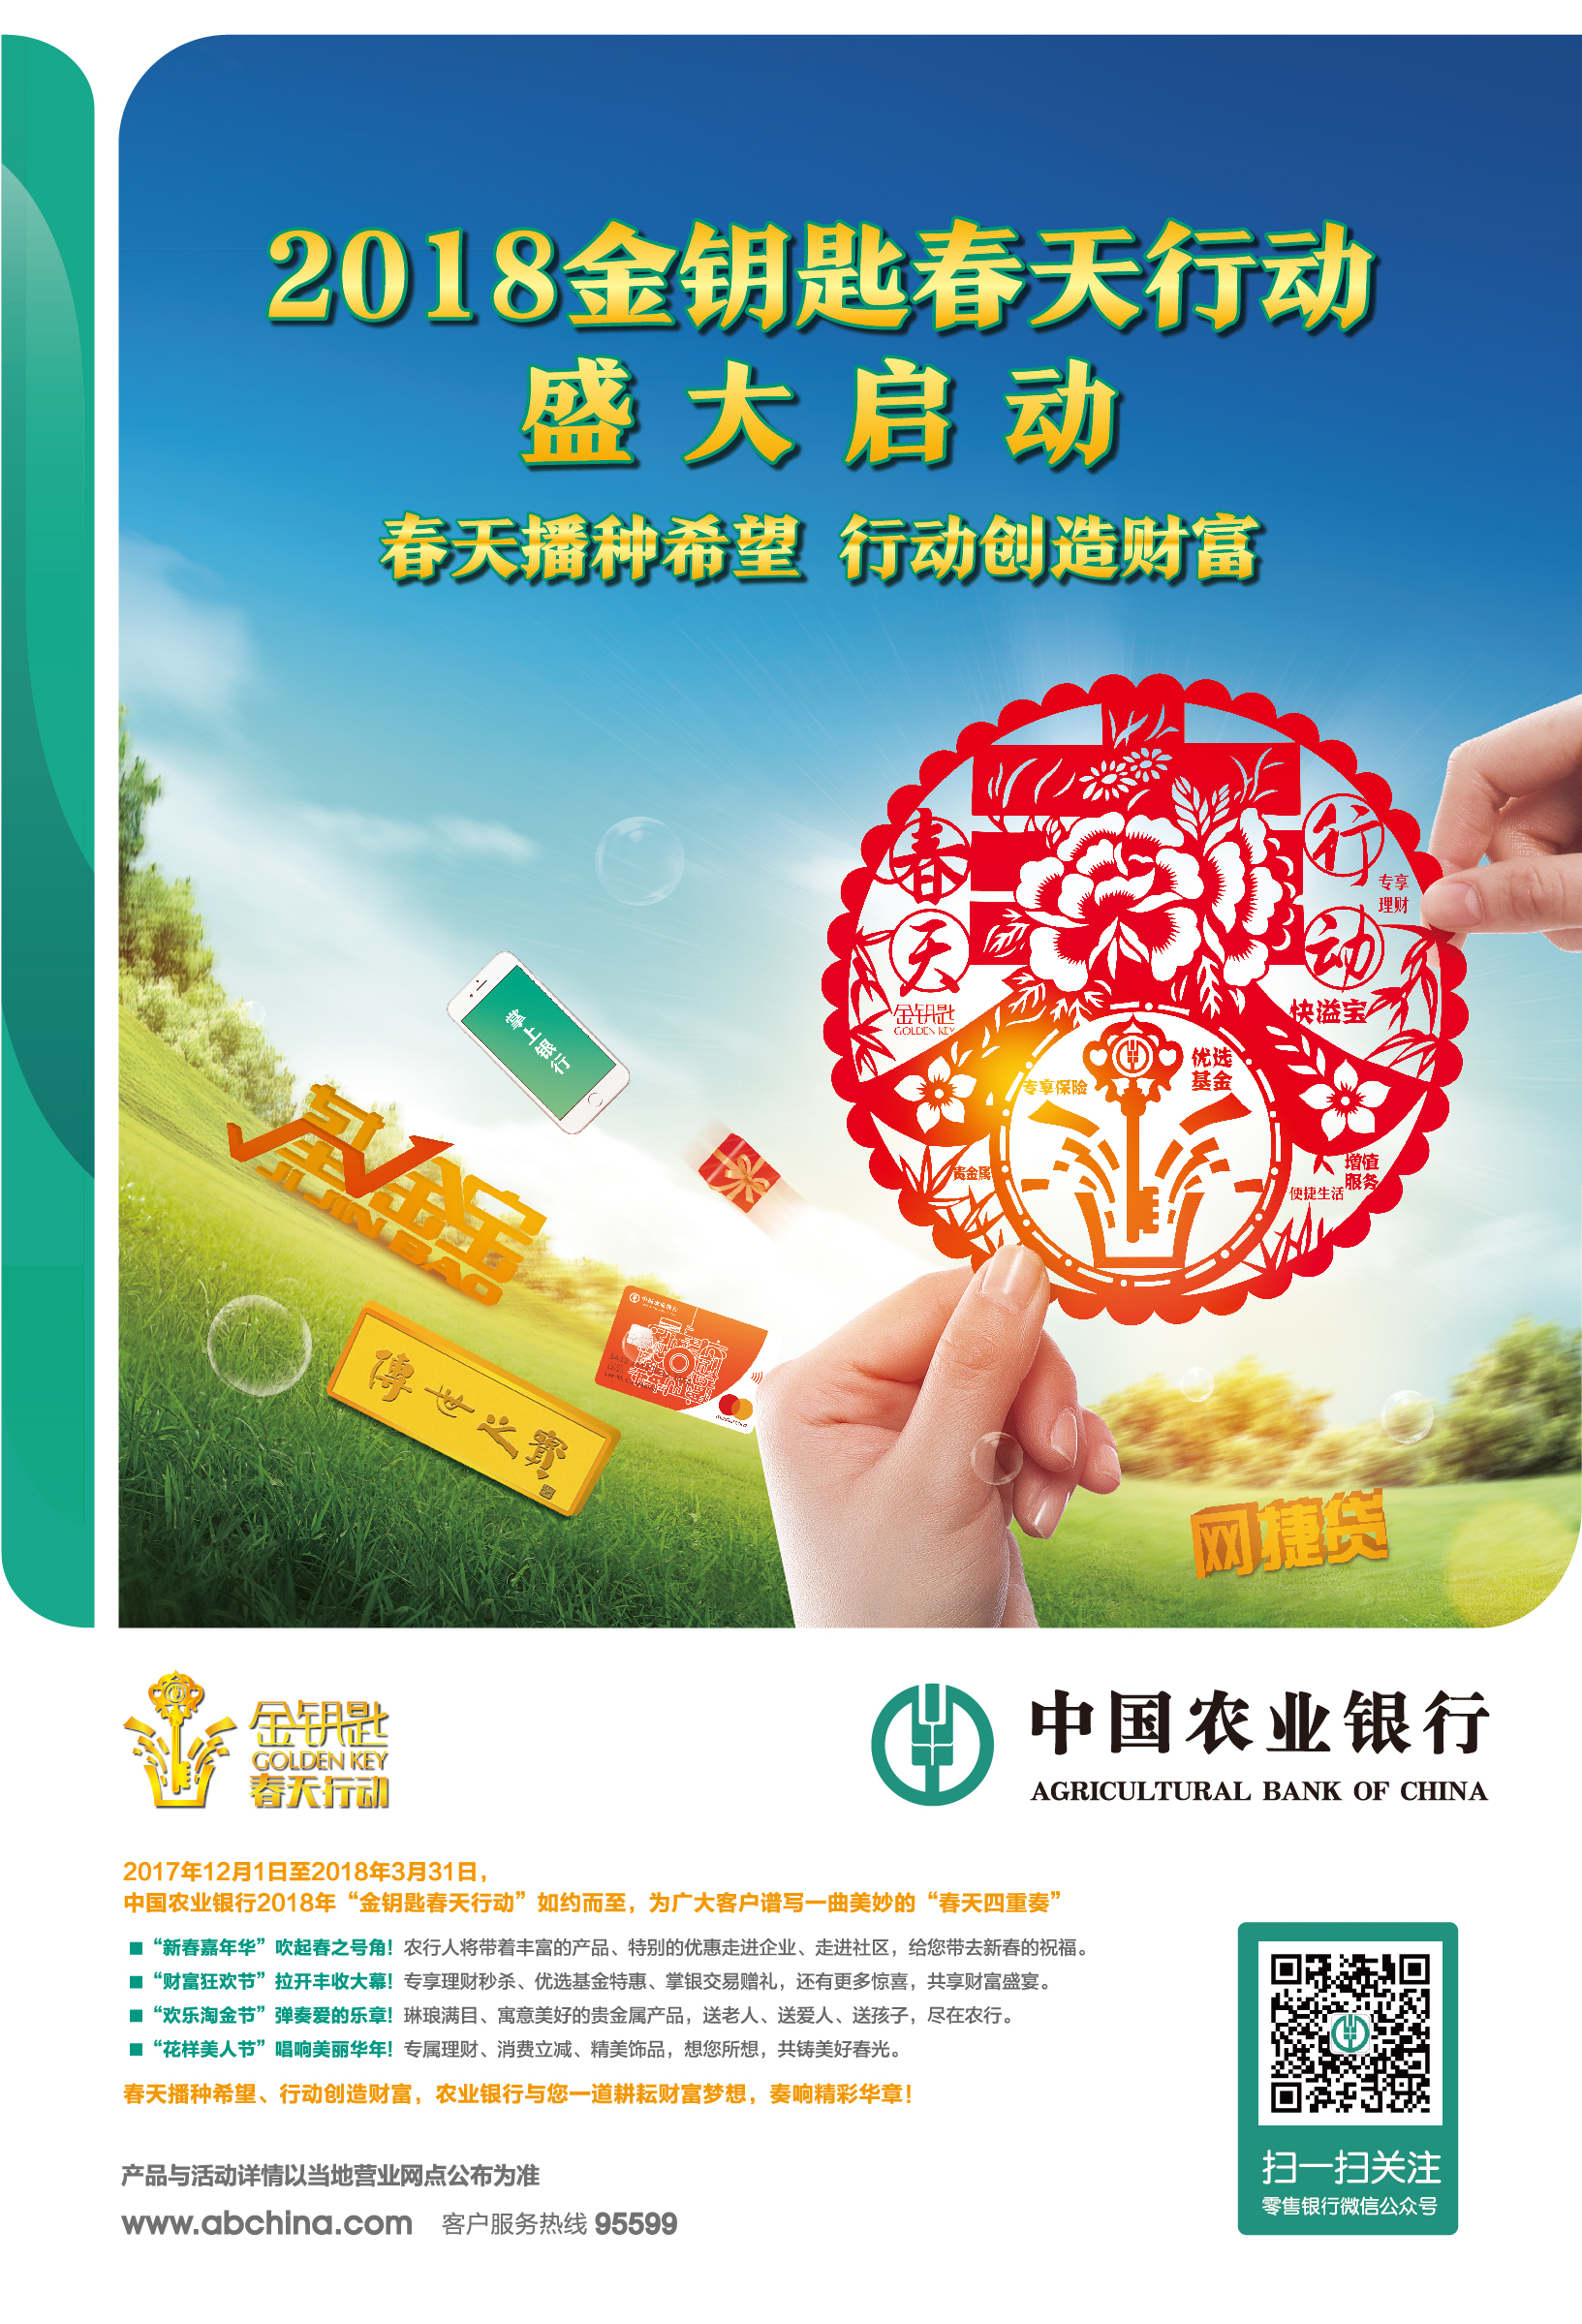 中国农业银行2018金钥匙春天行动盛大开启